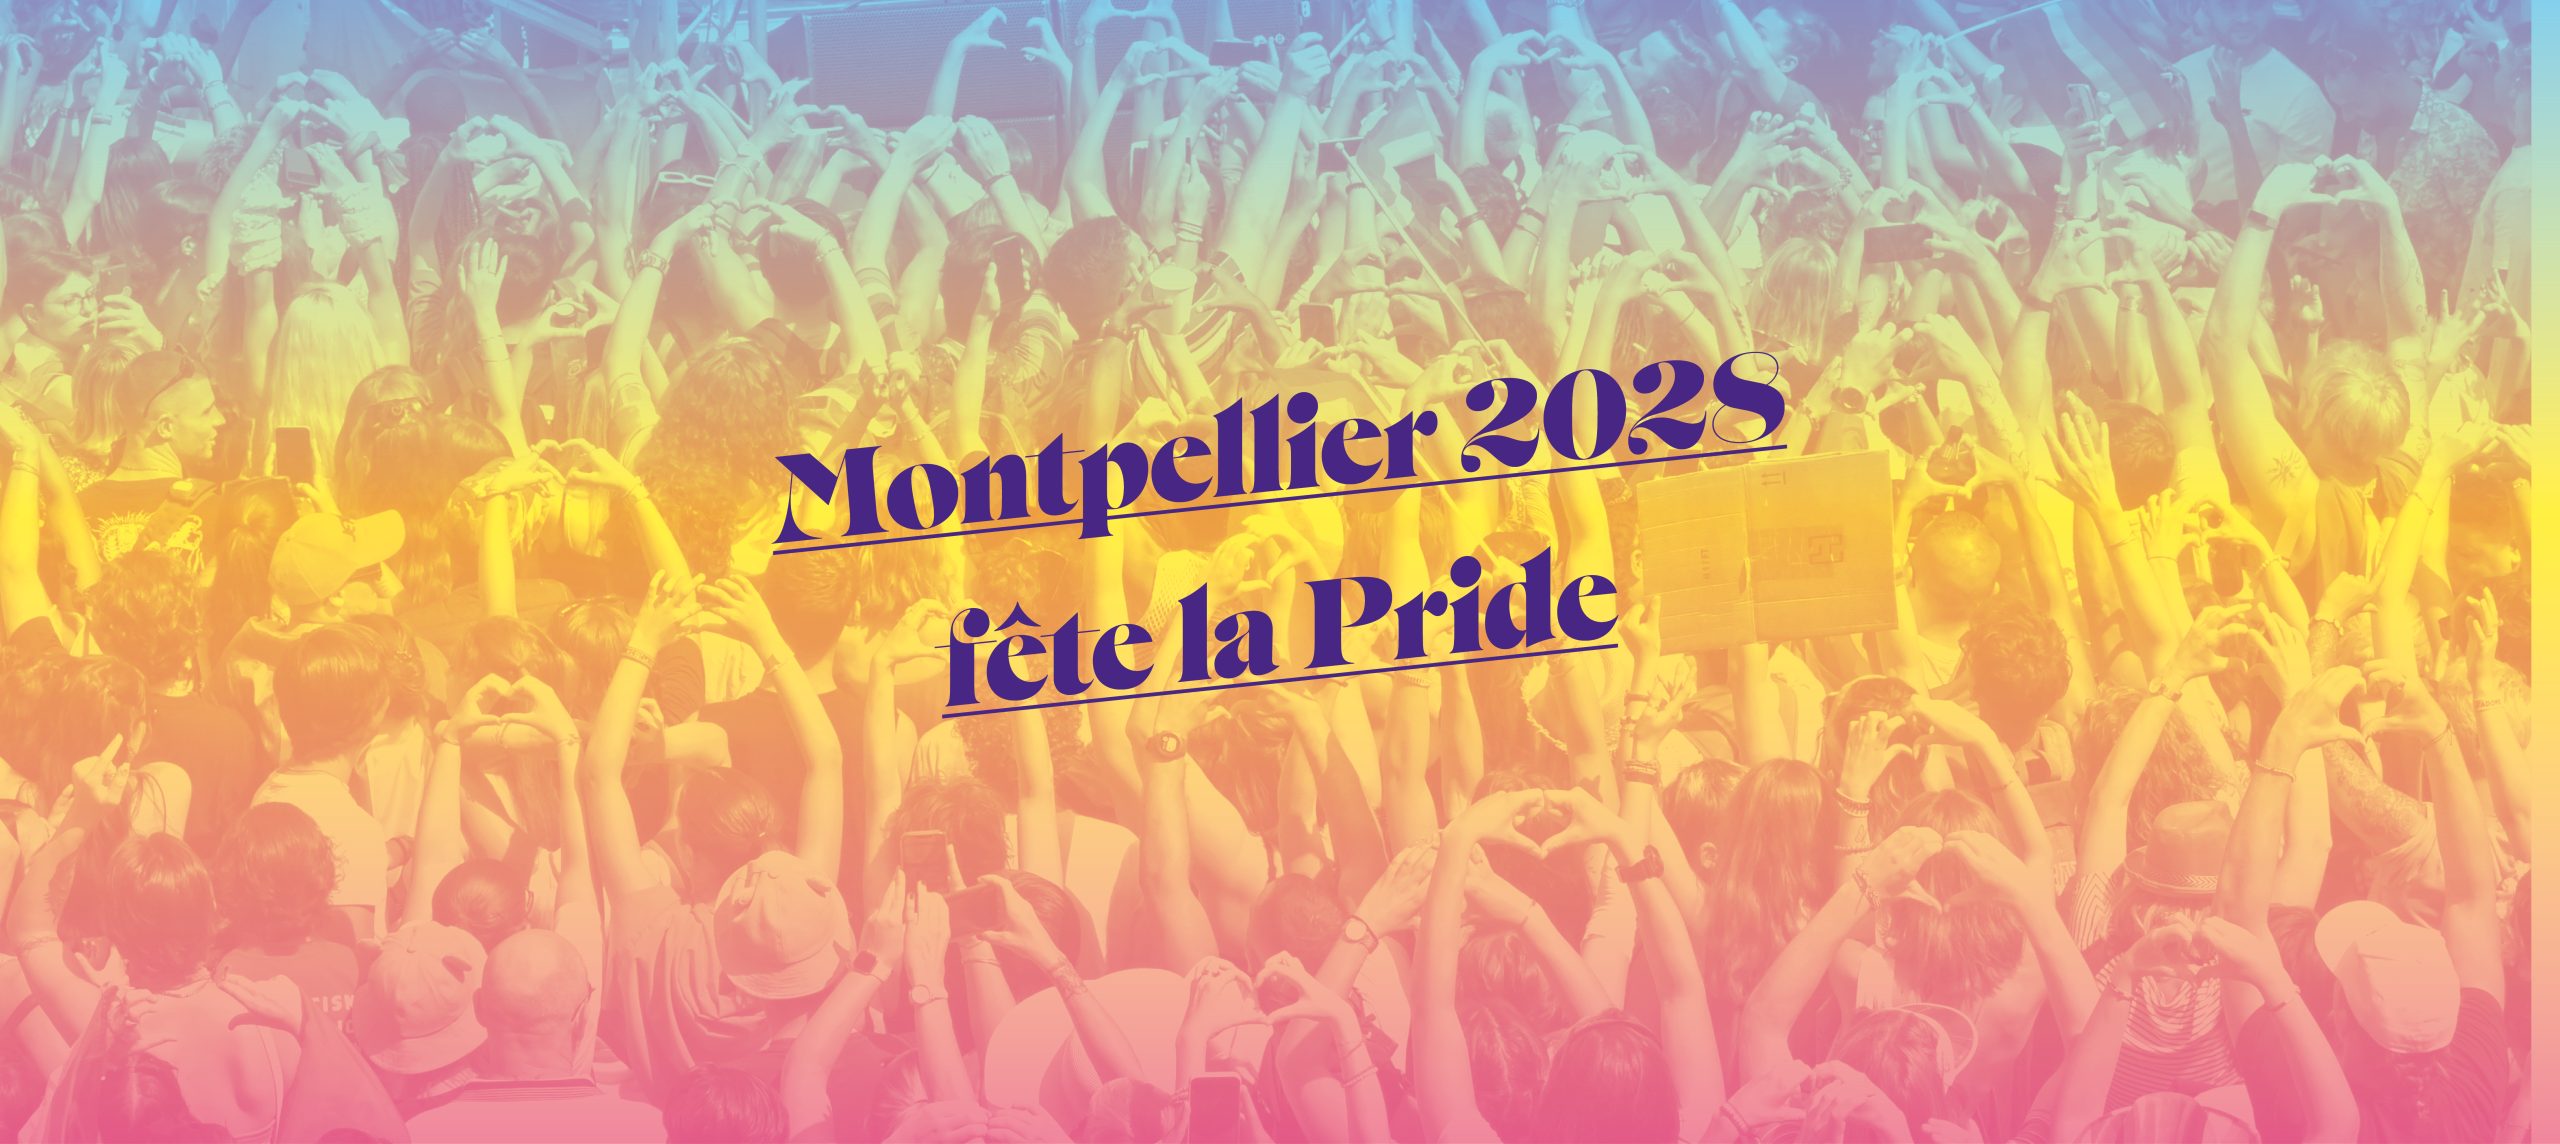 Montpellier 2028 fête la Pride !